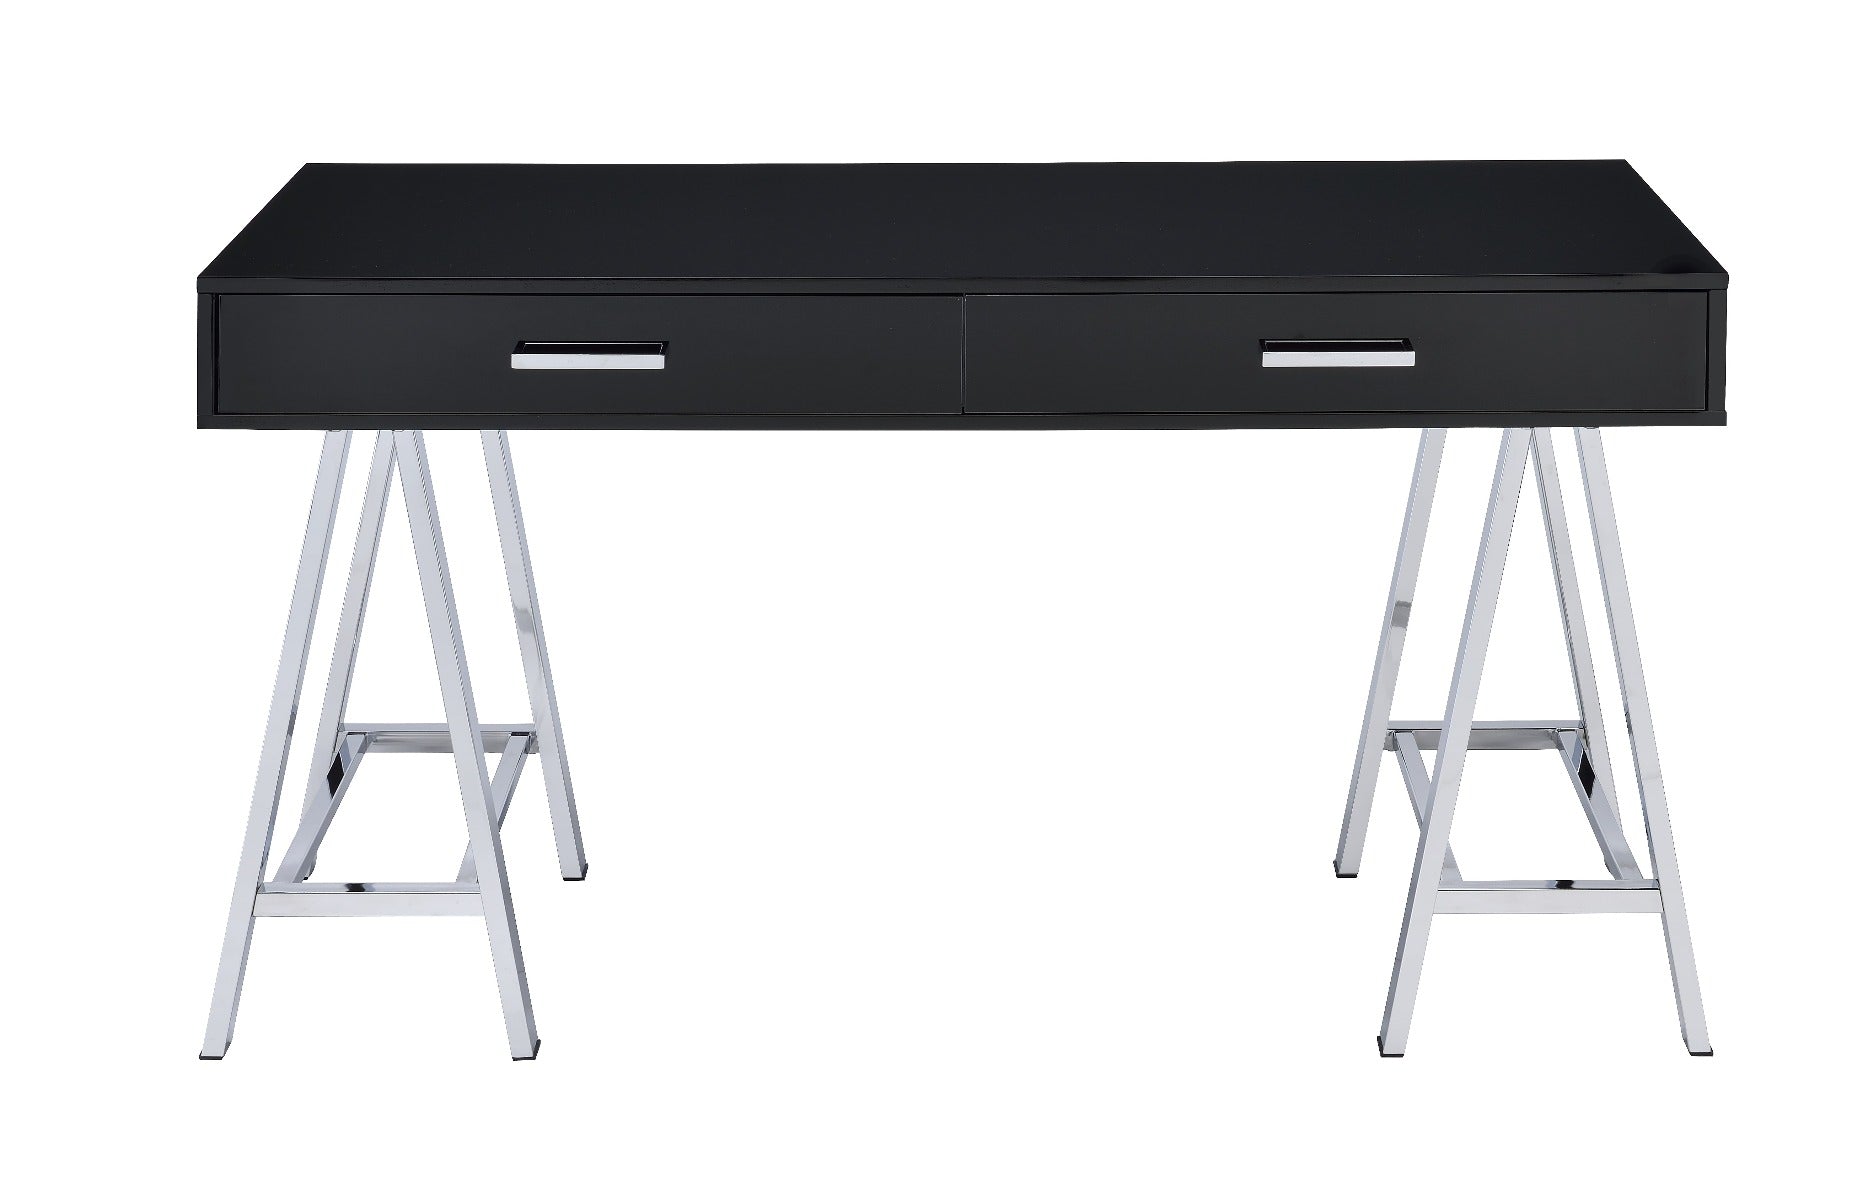 ACME Desks - ACME Coleen Built-in USB Port Writing Desk, Black High Gloss & Chrome Finish